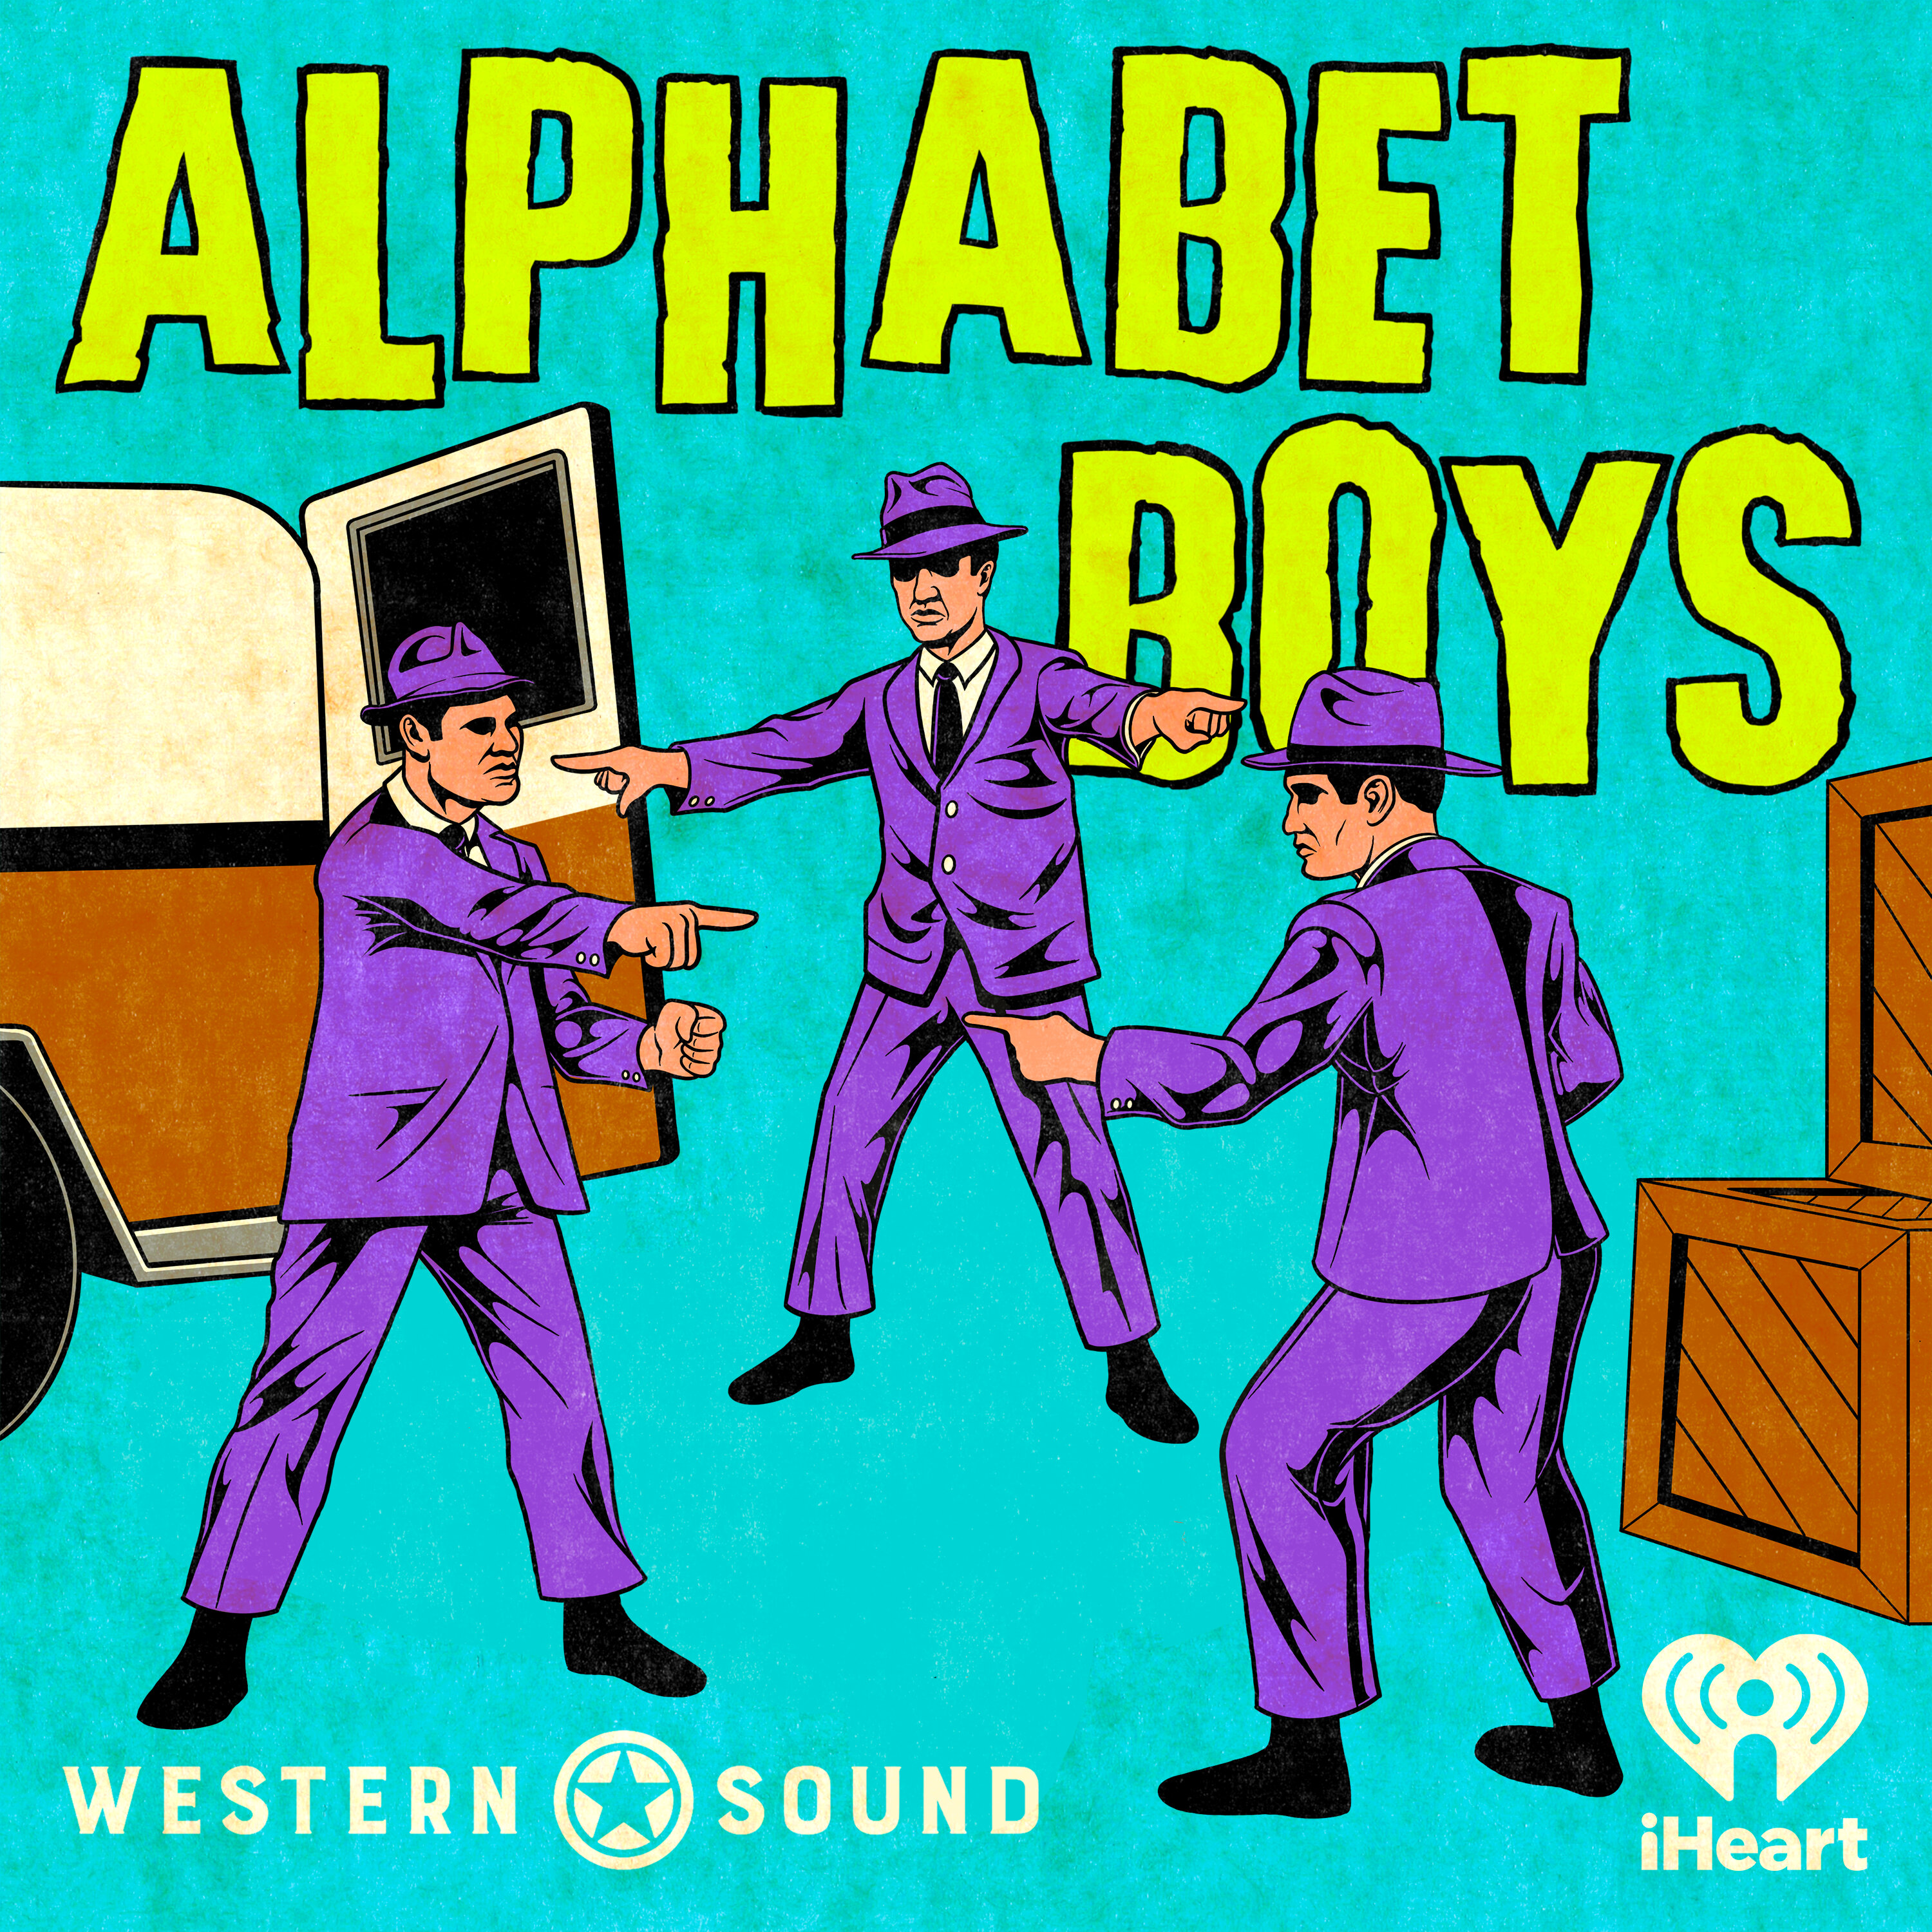 Alphabet Boys podcast show image